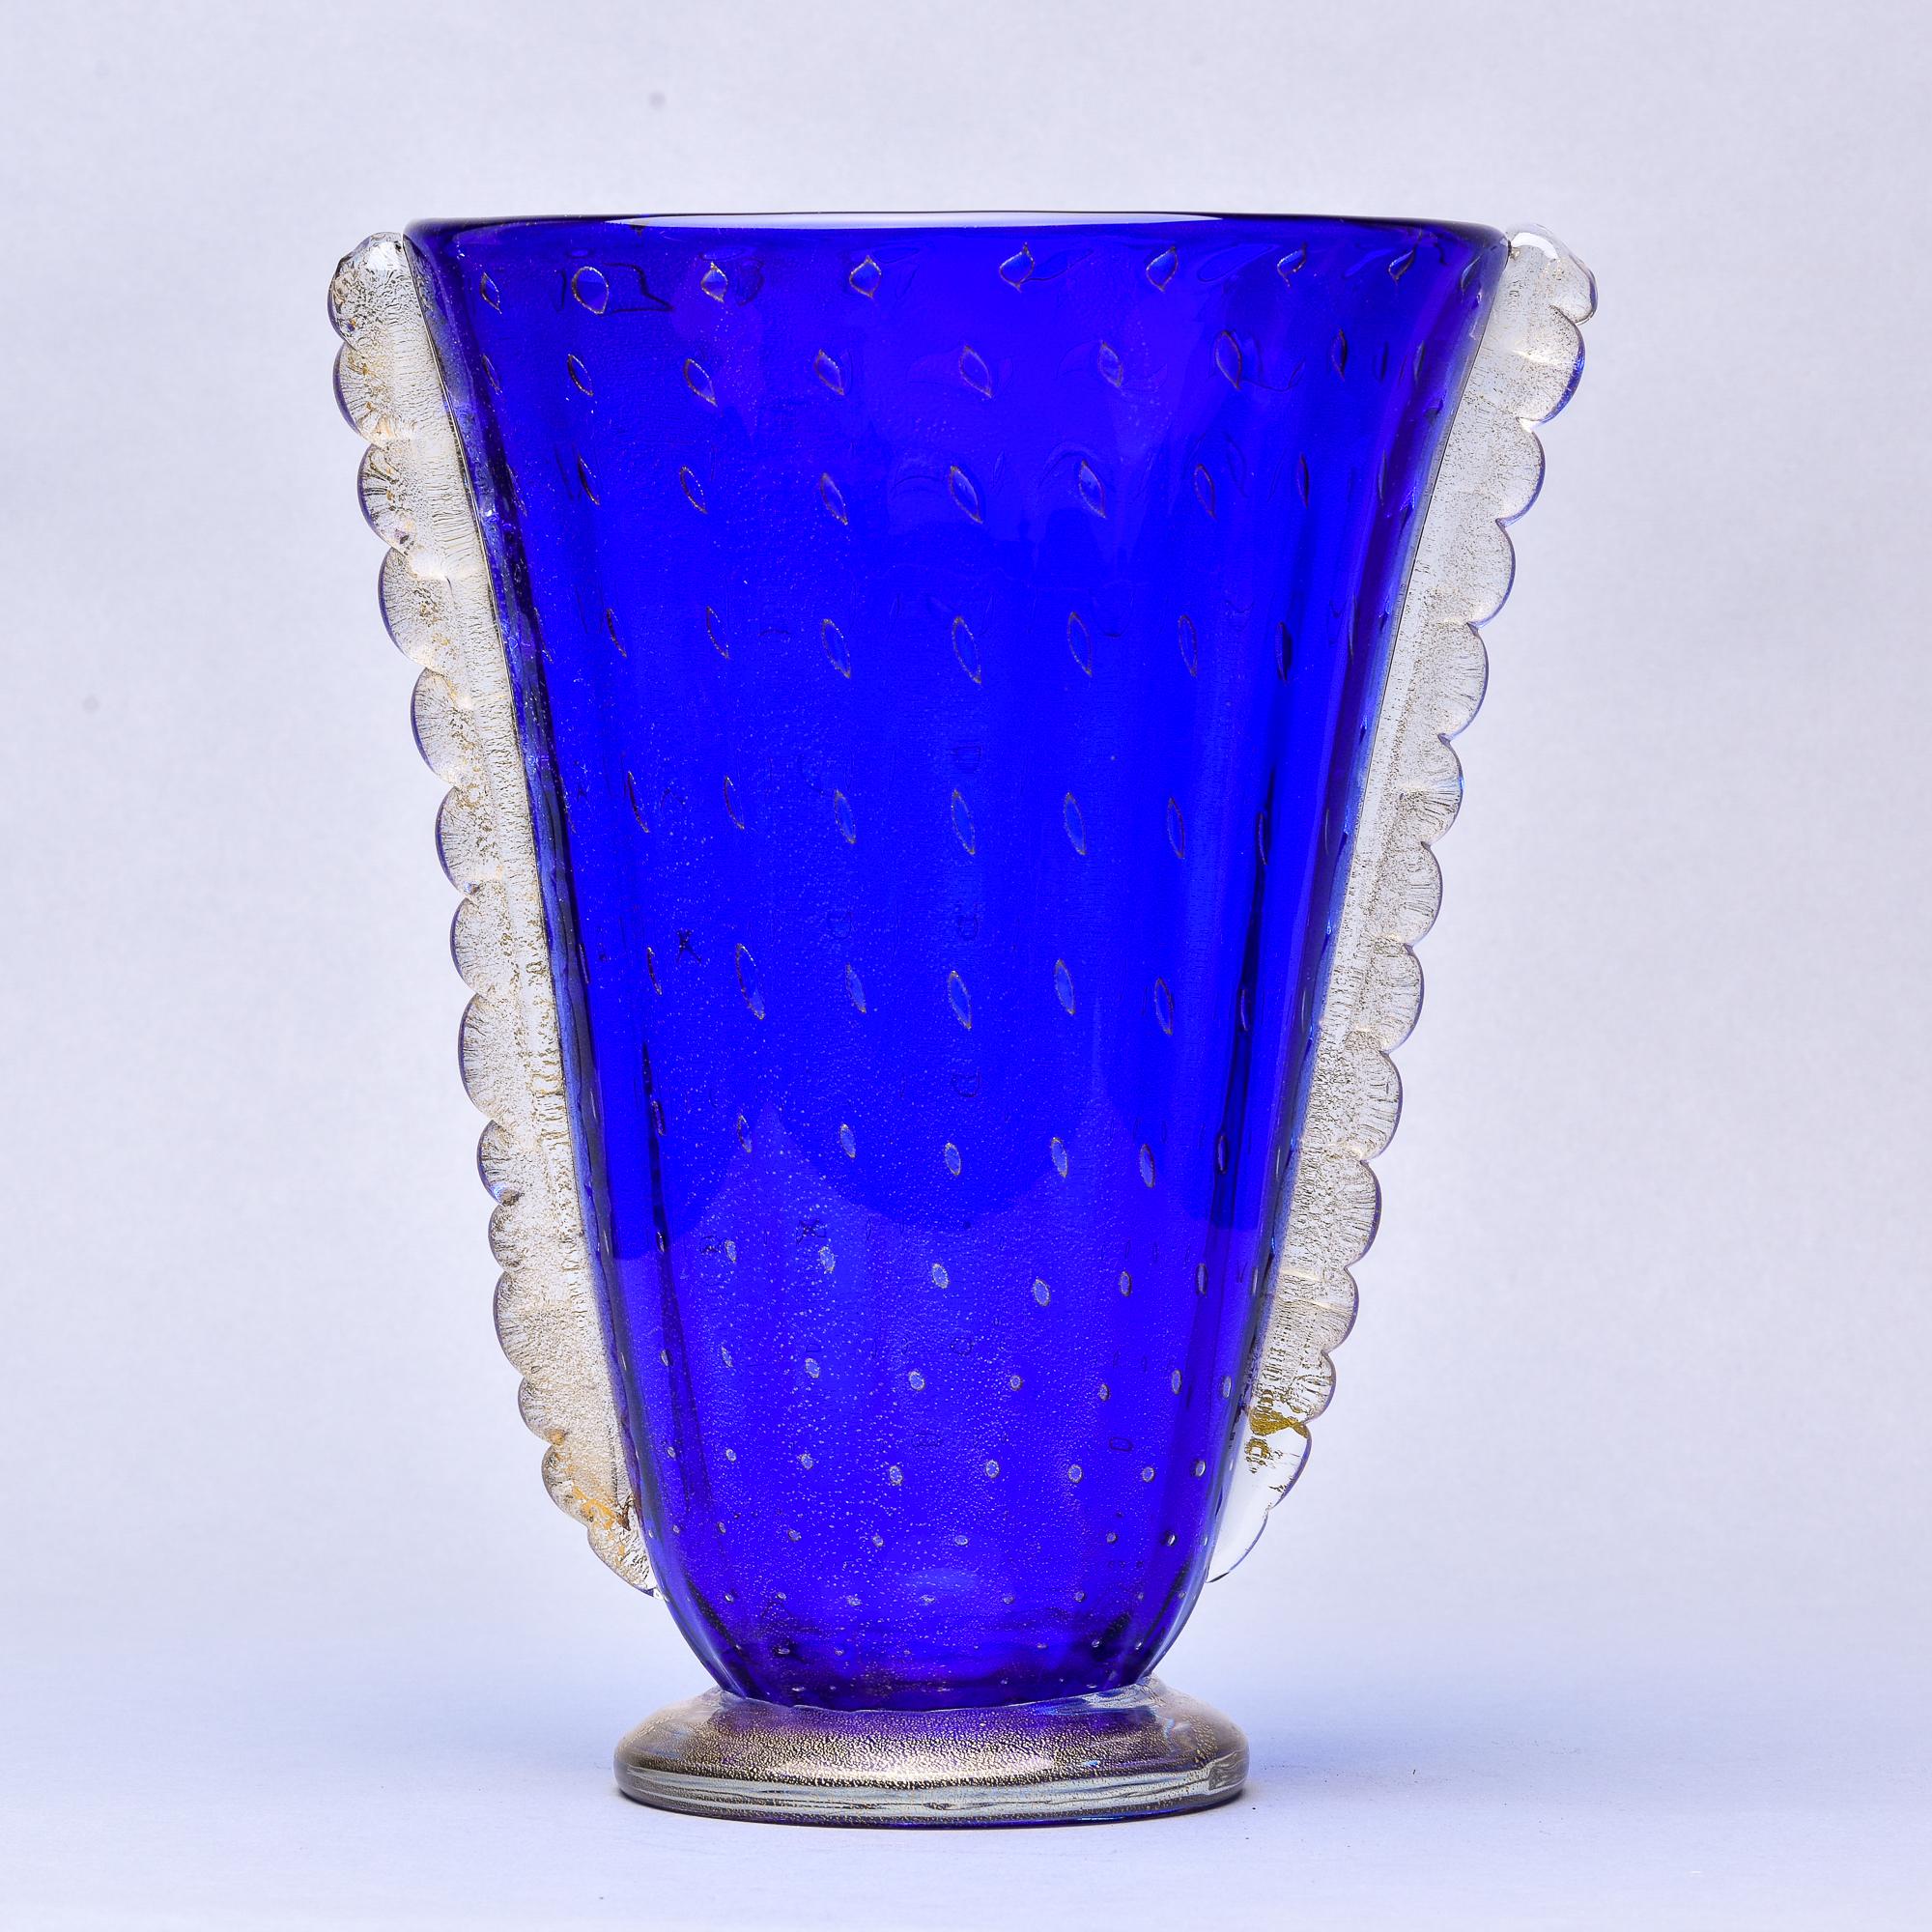 Trouvé en Italie, ce vase en verre de Murano bleu des années 1950 présente un corps évasé avec des ailettes latérales décoratives contrastées et est attribué à Barovier. La base et les côtés sont en verre transparent avec des inclusions d'or. Le